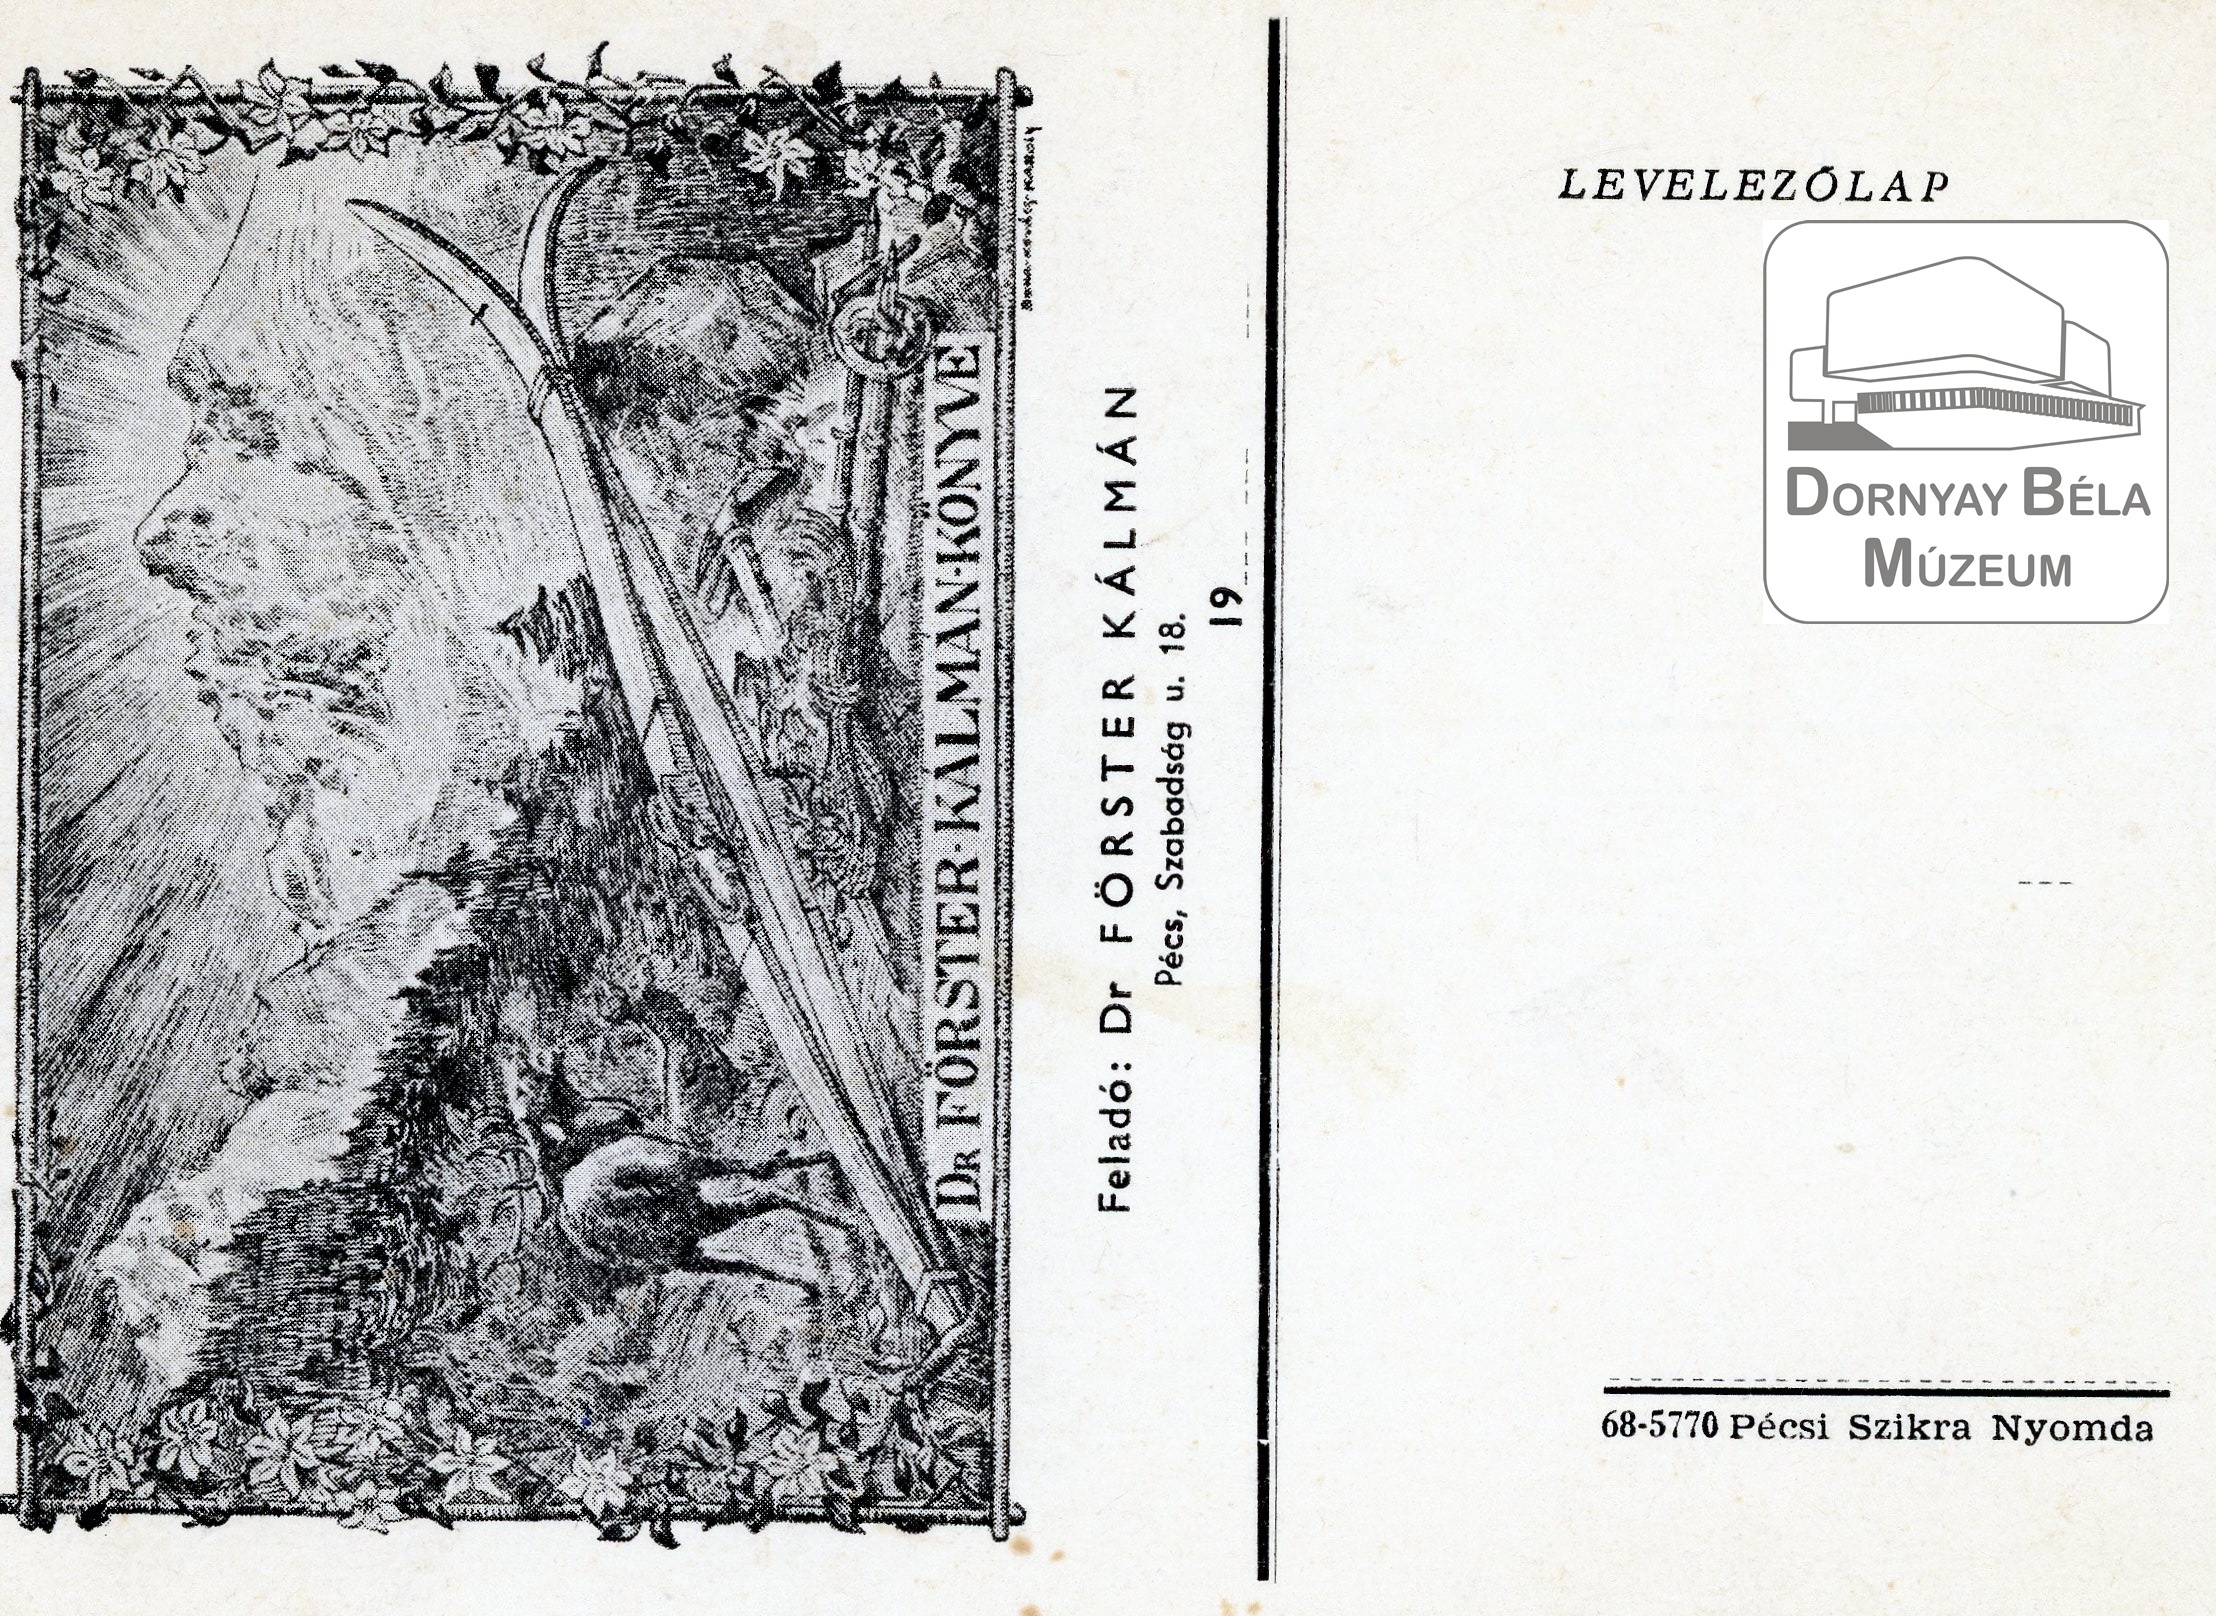 Levelezőlap Dr. Förster Kálmántól (Dornyay Béla Múzeum, Salgótarján CC BY-NC-SA)